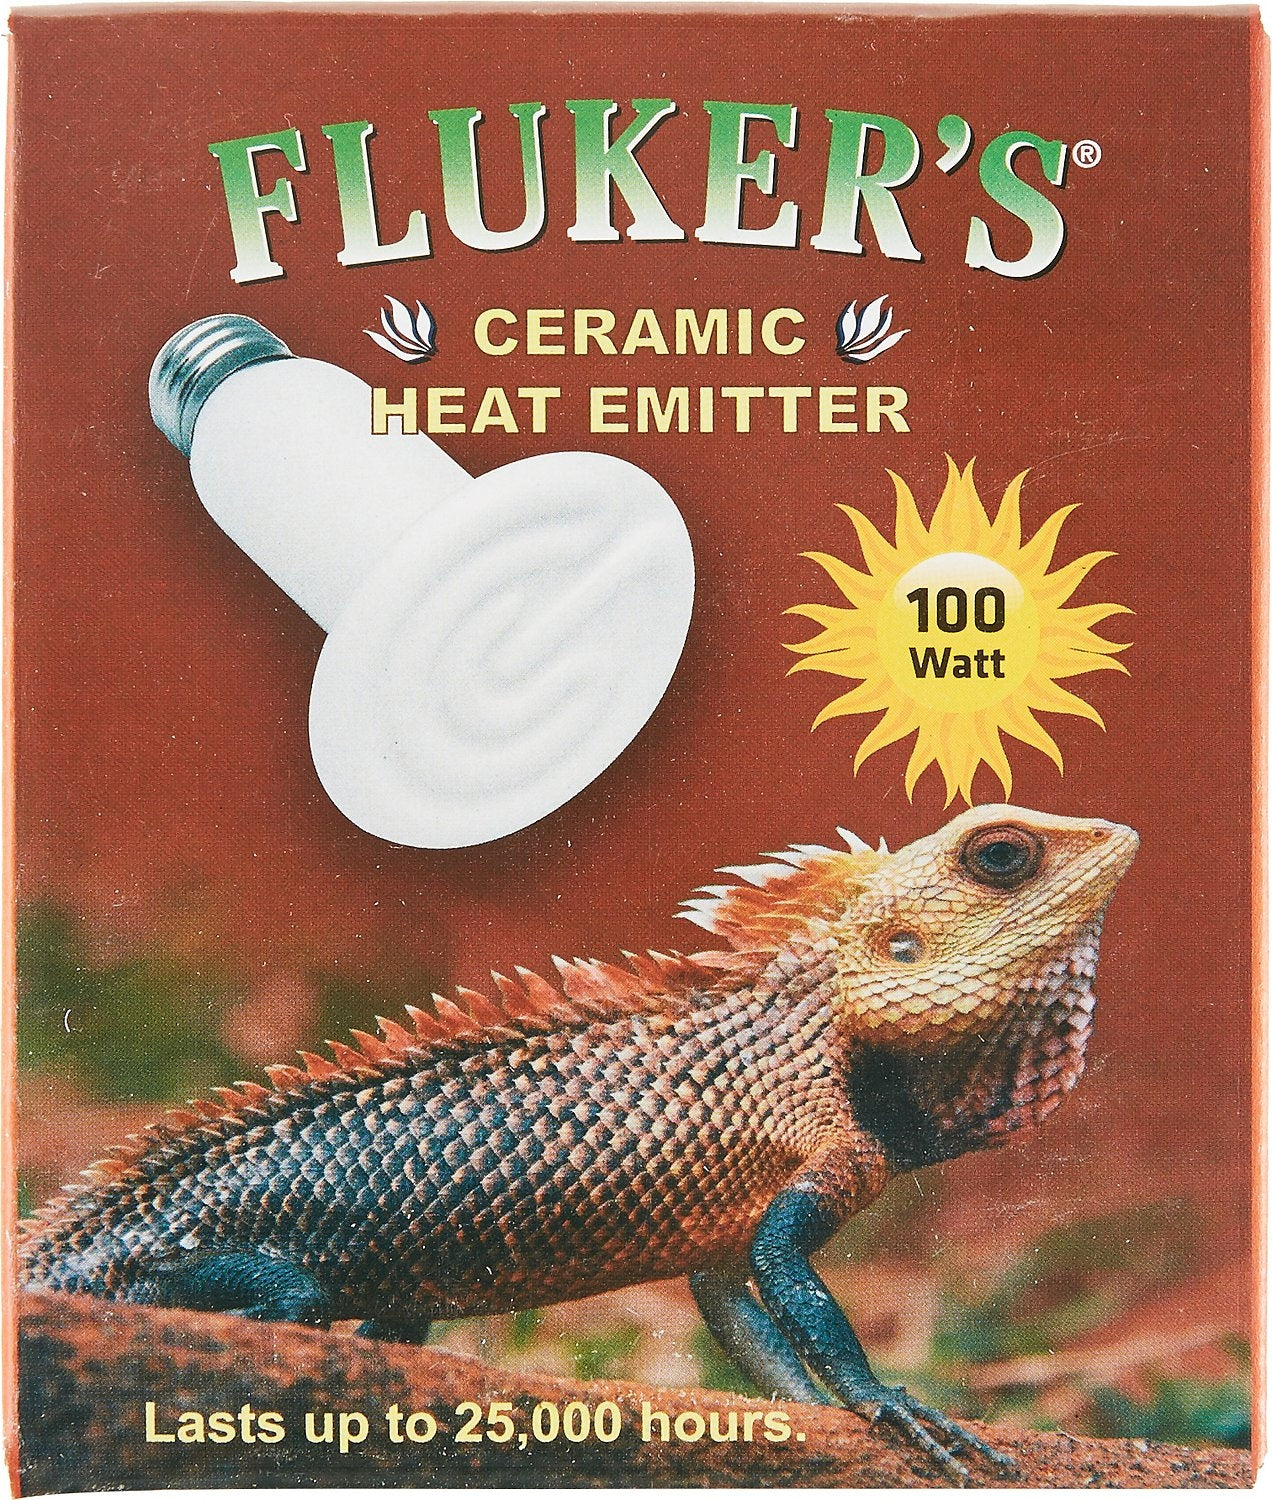 Fluker's Ceramic Heat Emitter For Reptiles - 100 Watt